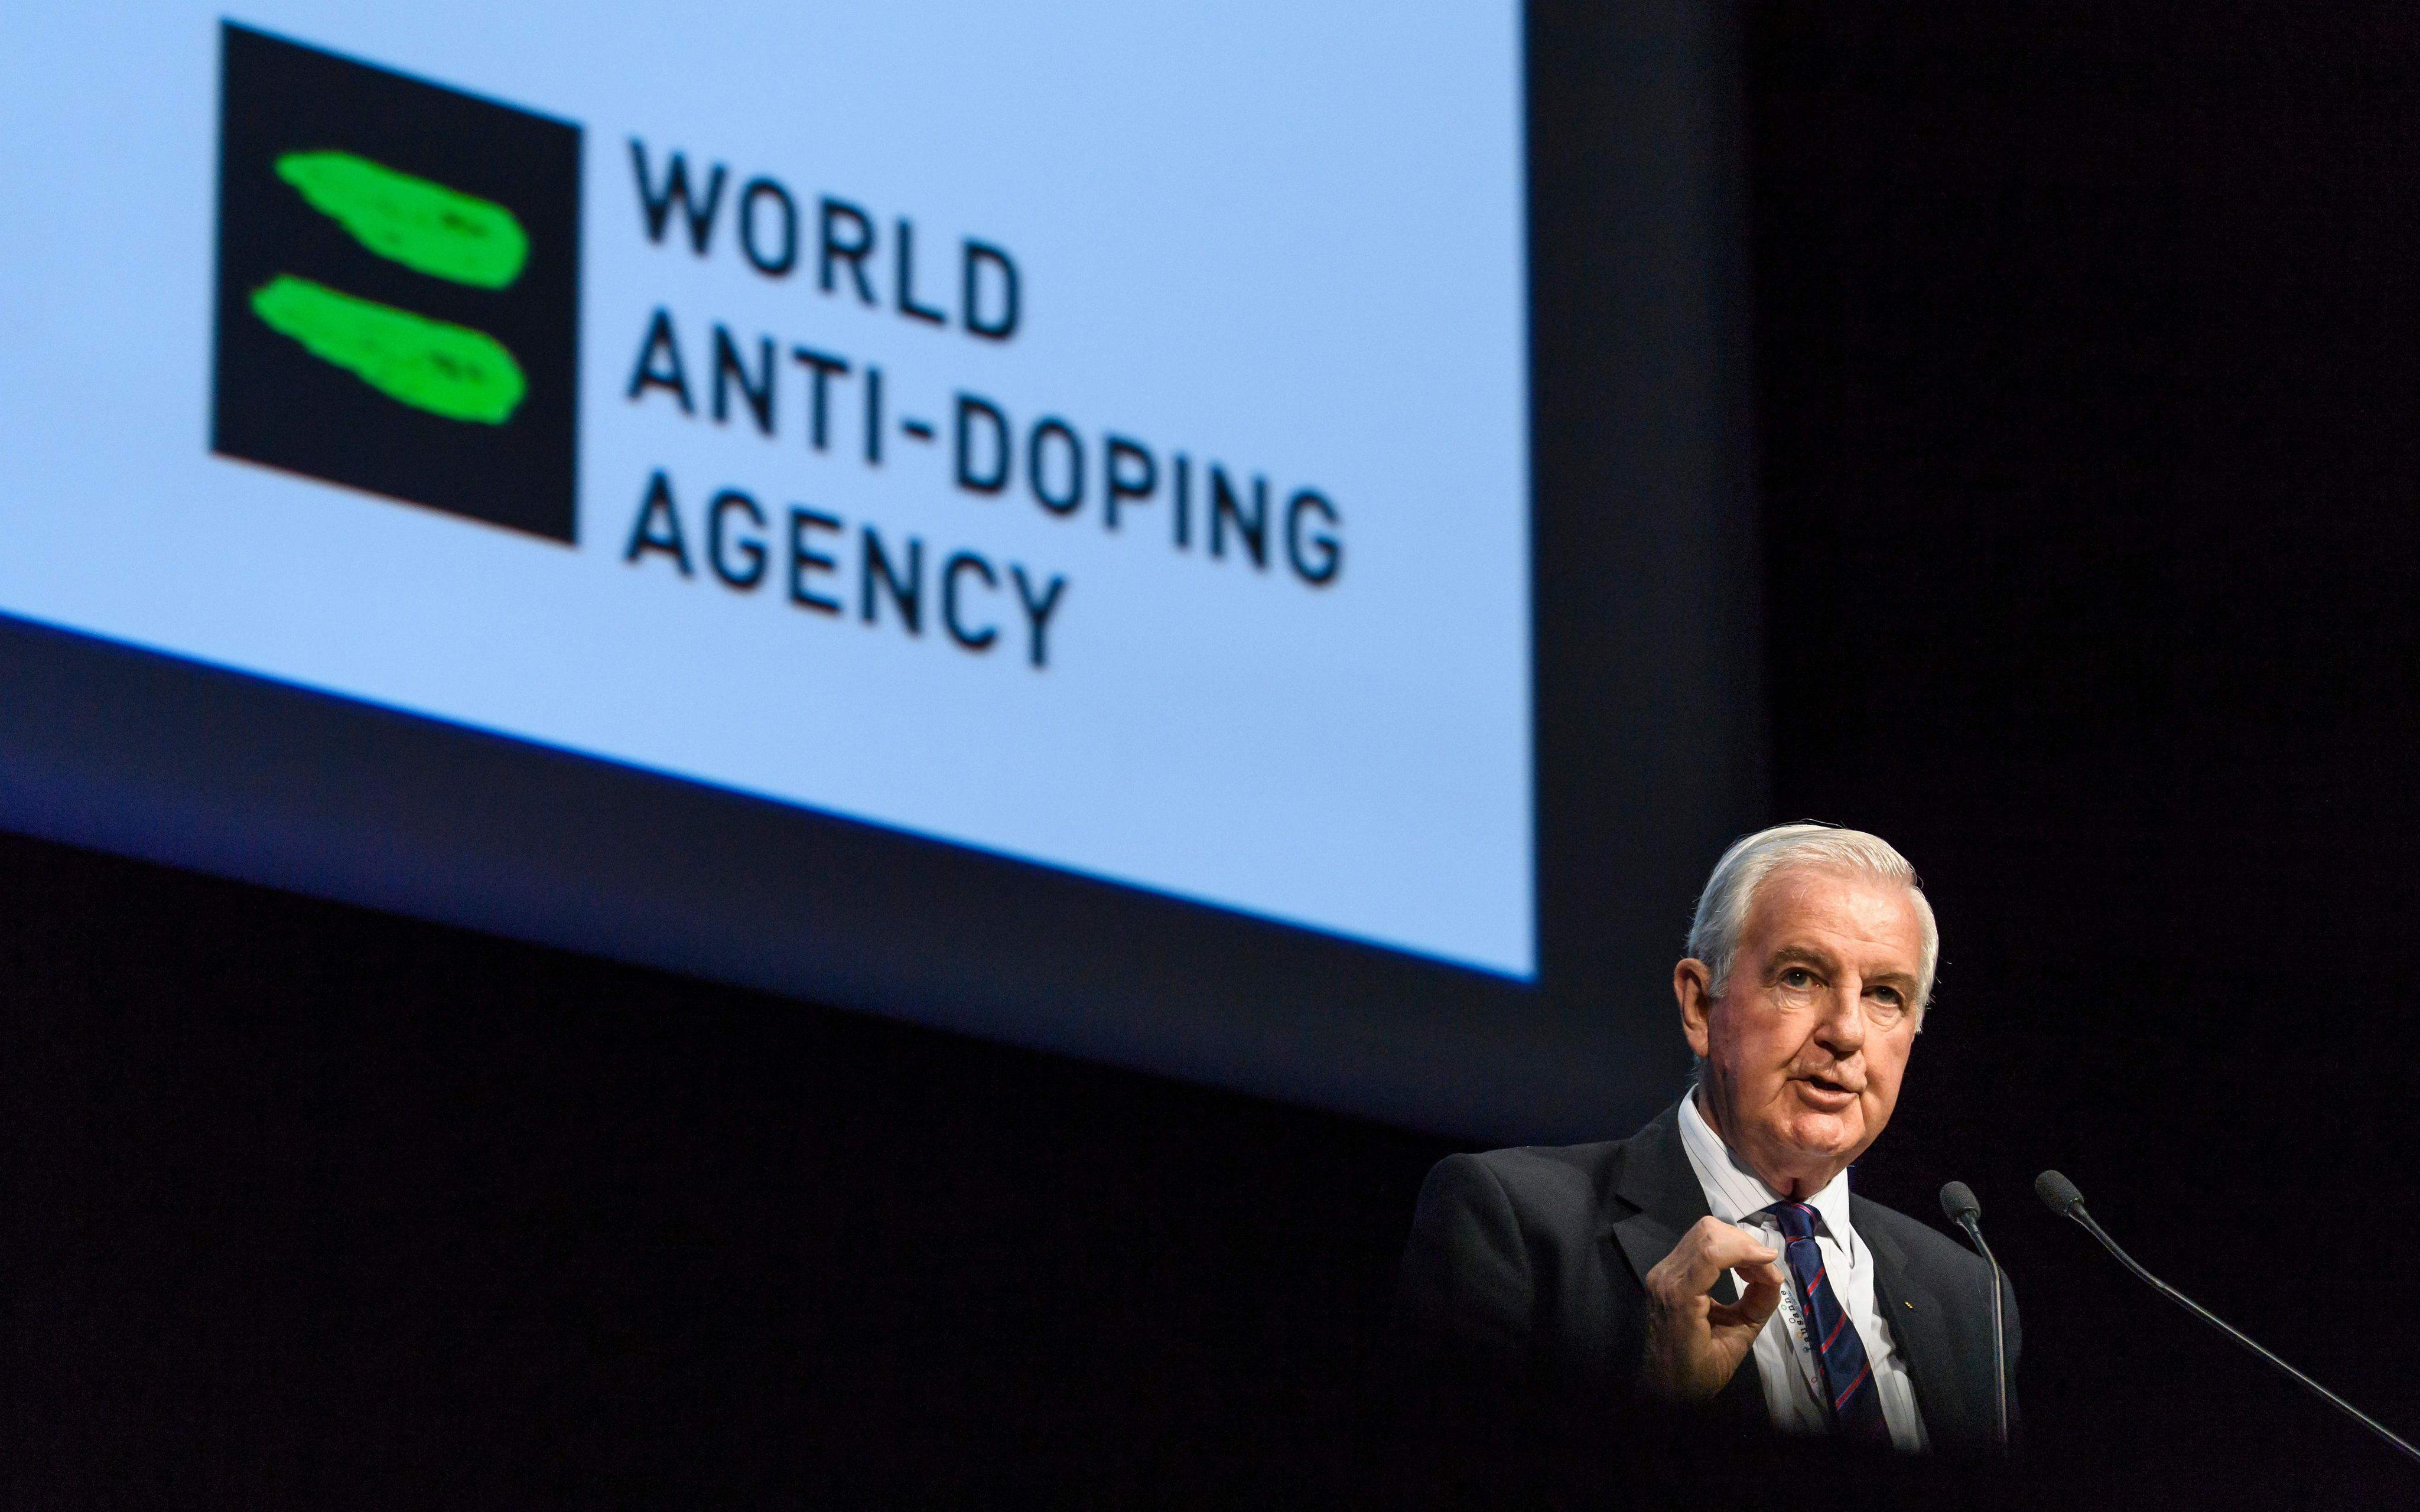 Всемирное антидопинговое агентство (WADA)